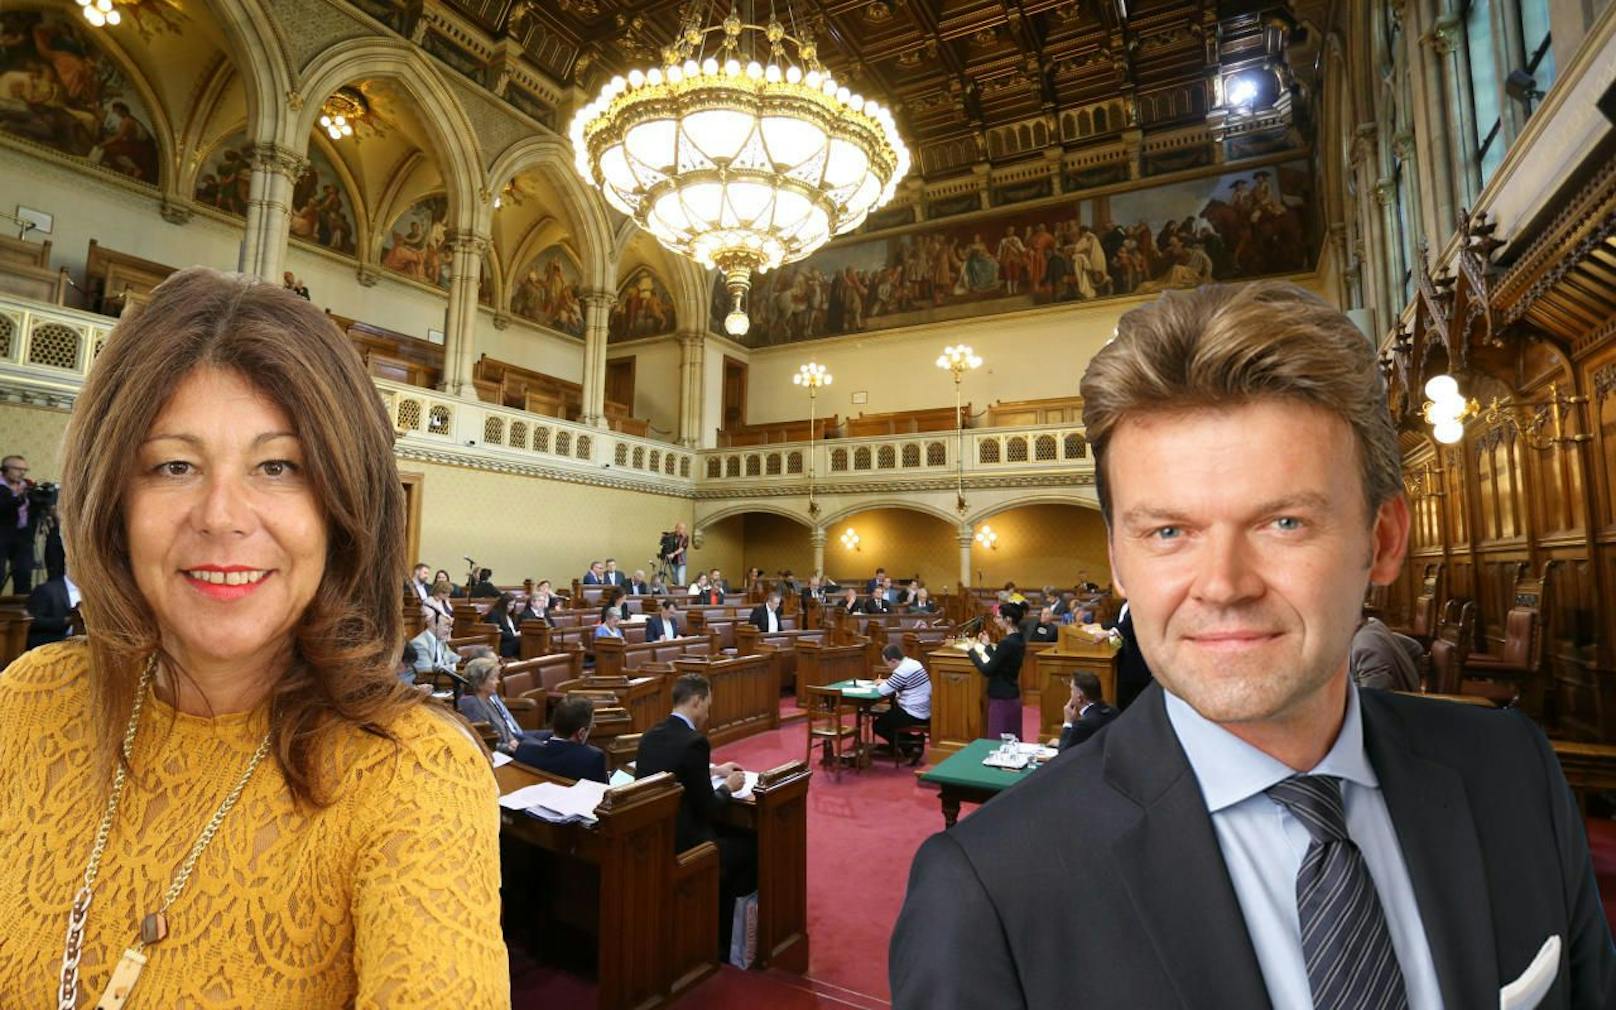 Neue Gesichter im Wiener Gemeinderat: Yvonne Rychly (SPÖ) und Roman Schmid (FPÖ). (c) Denise Auer, Thomas Reimer, FPÖ Wien